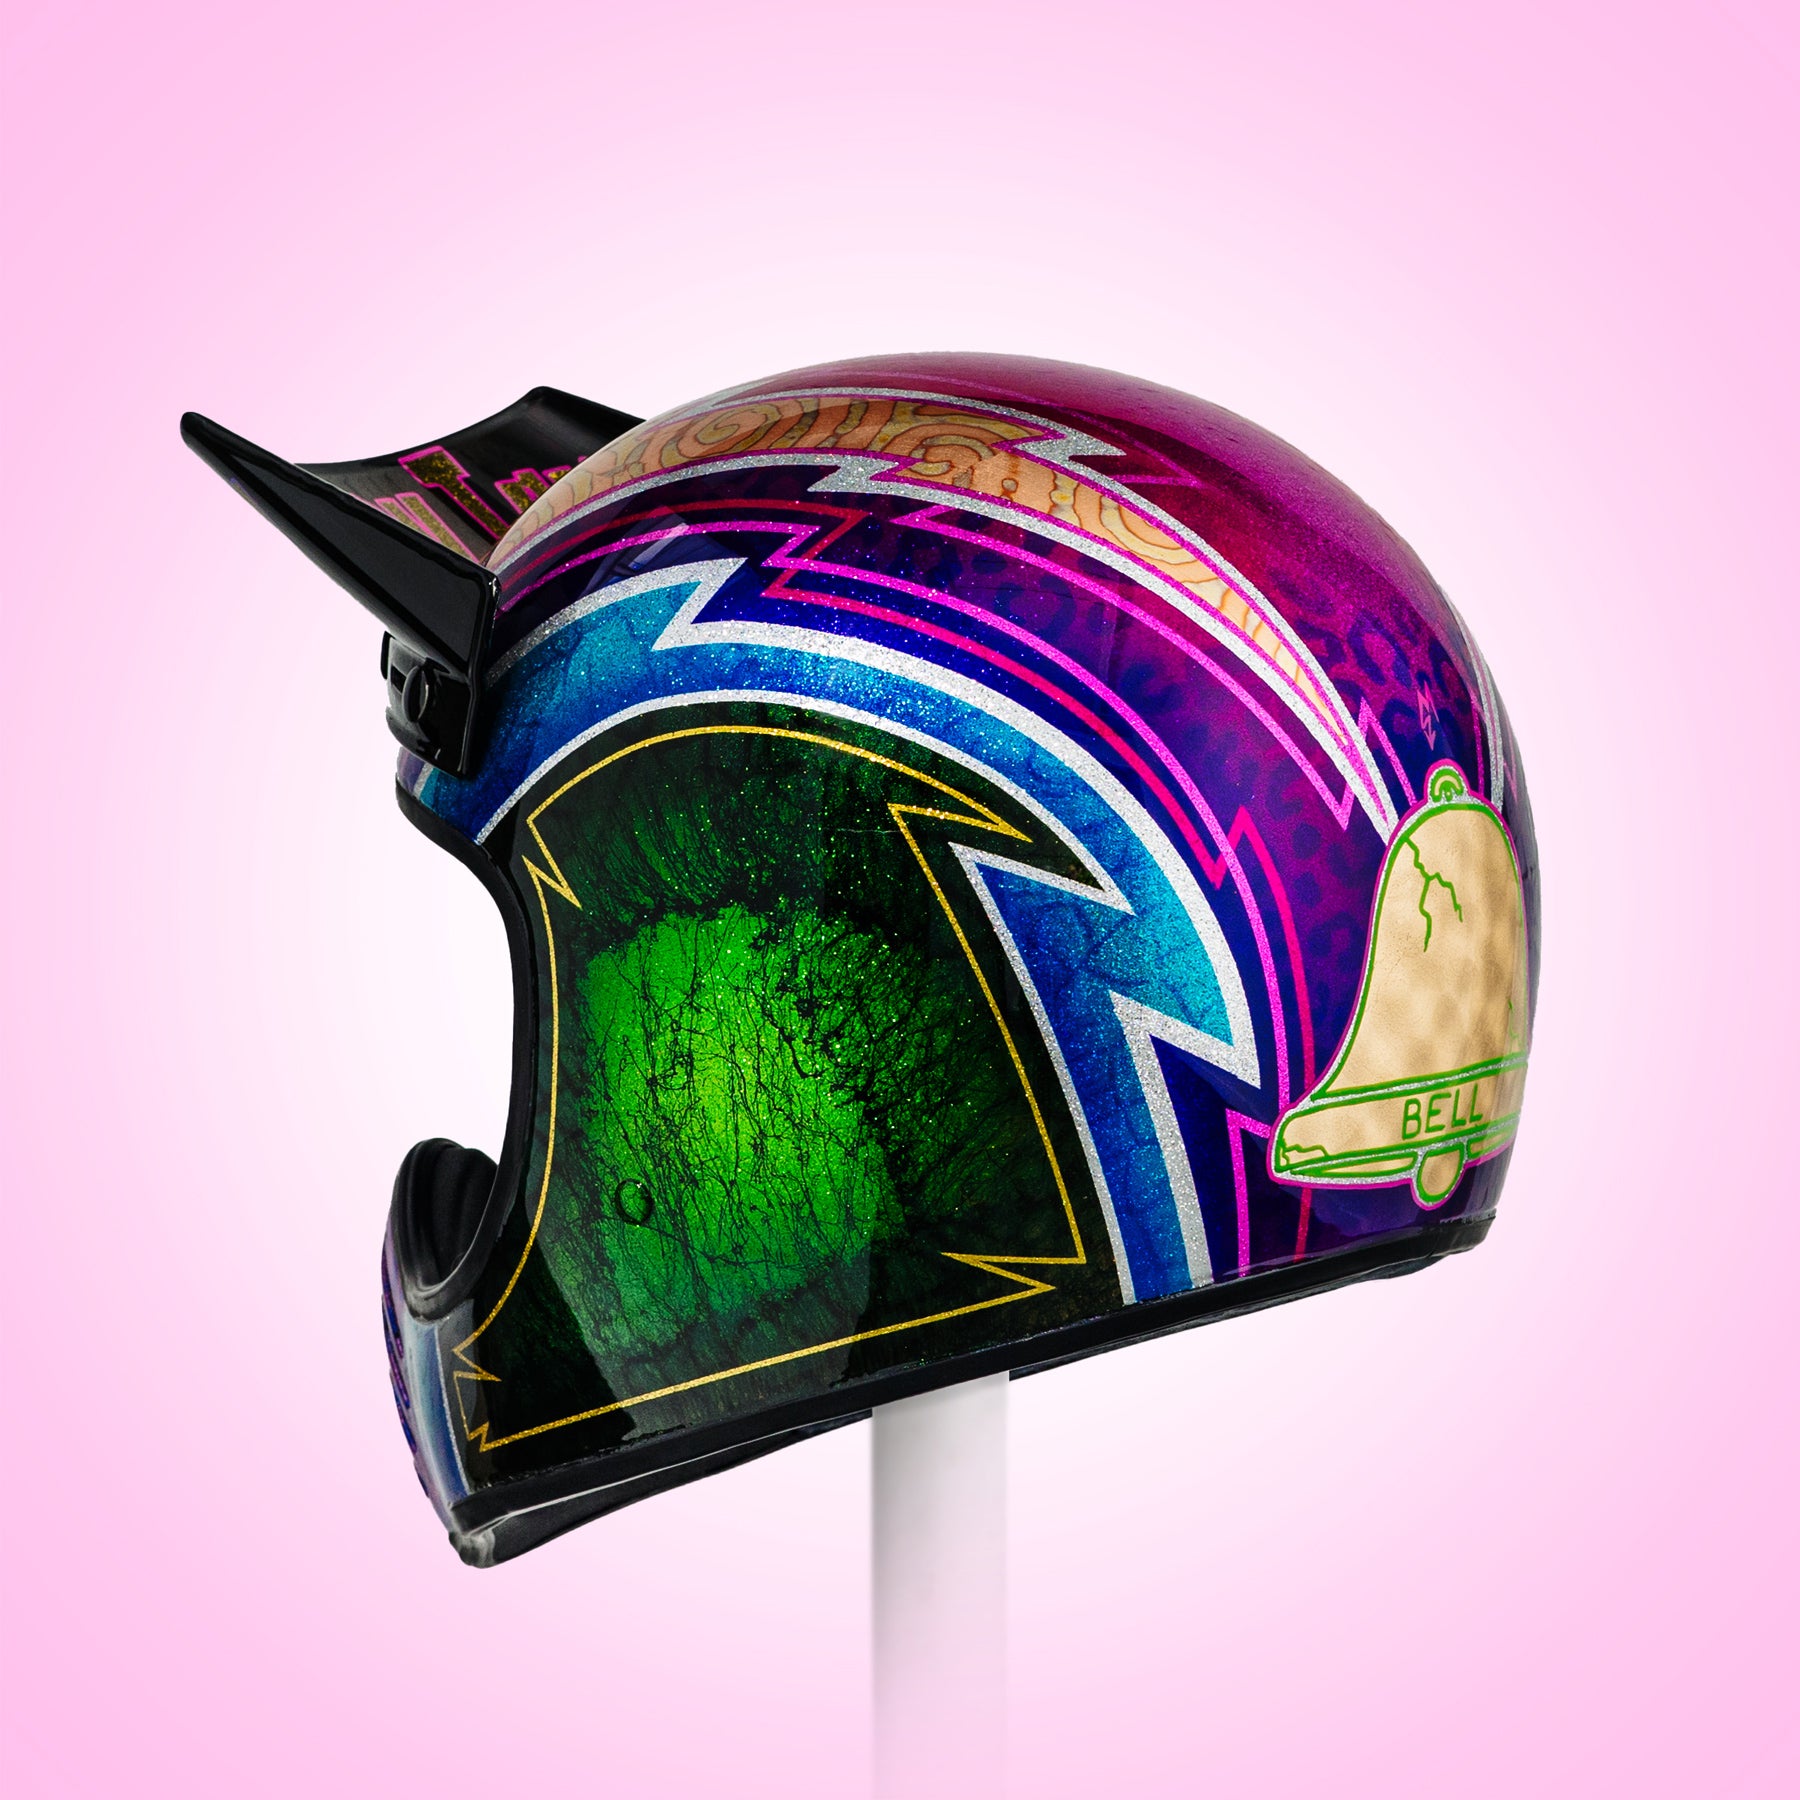 Trippy Ten Helmet Art Show Glory Daze Pittsburgh Moe Colbert